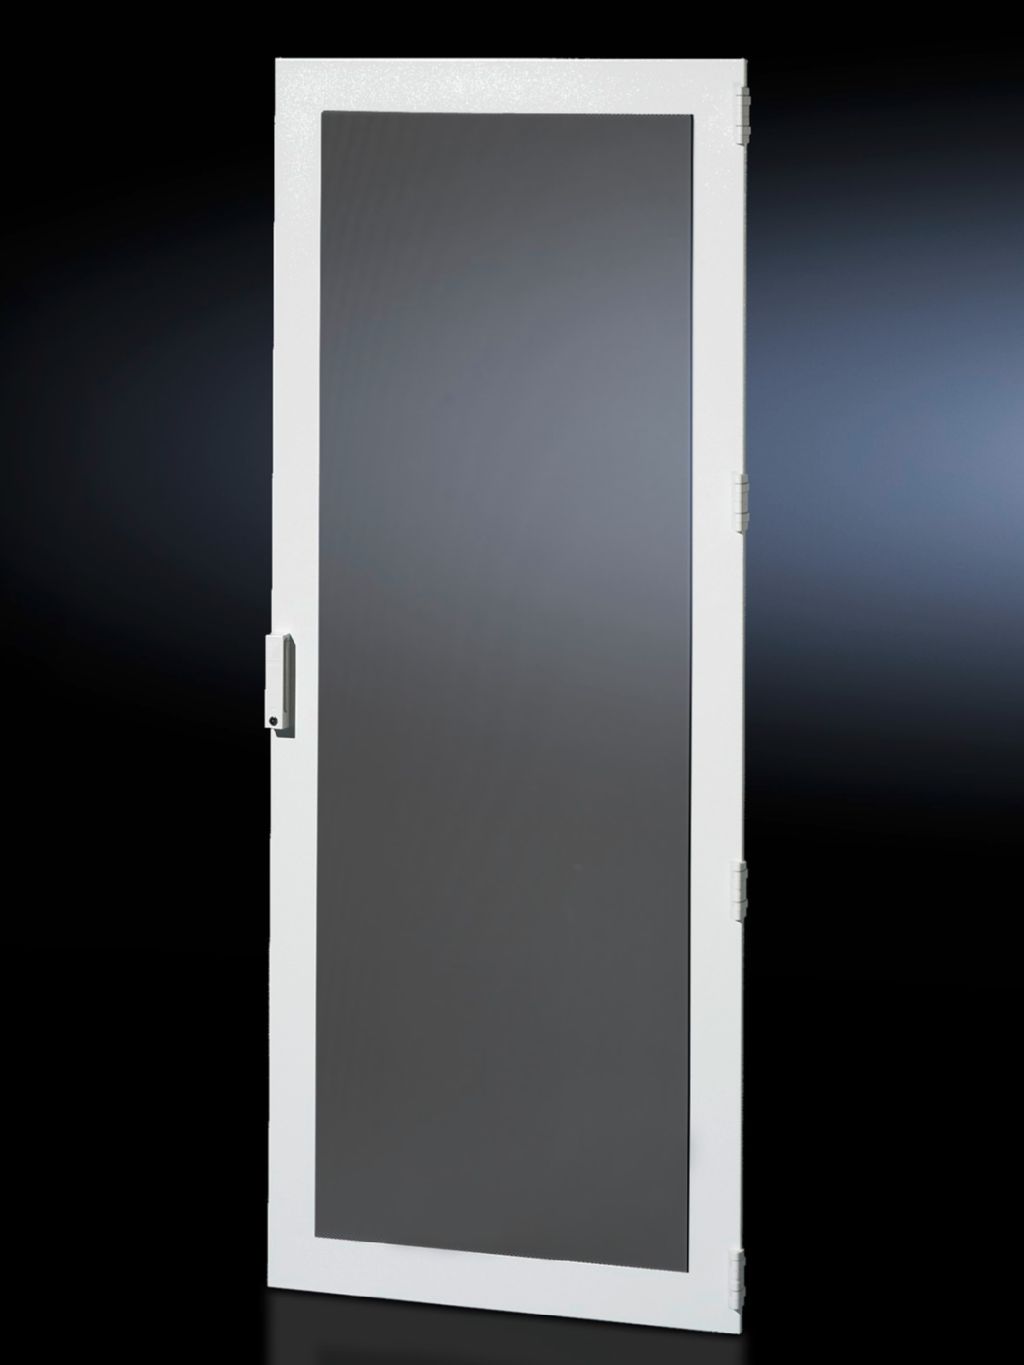 Стальная дверь, с вентиляцией для DK-TS